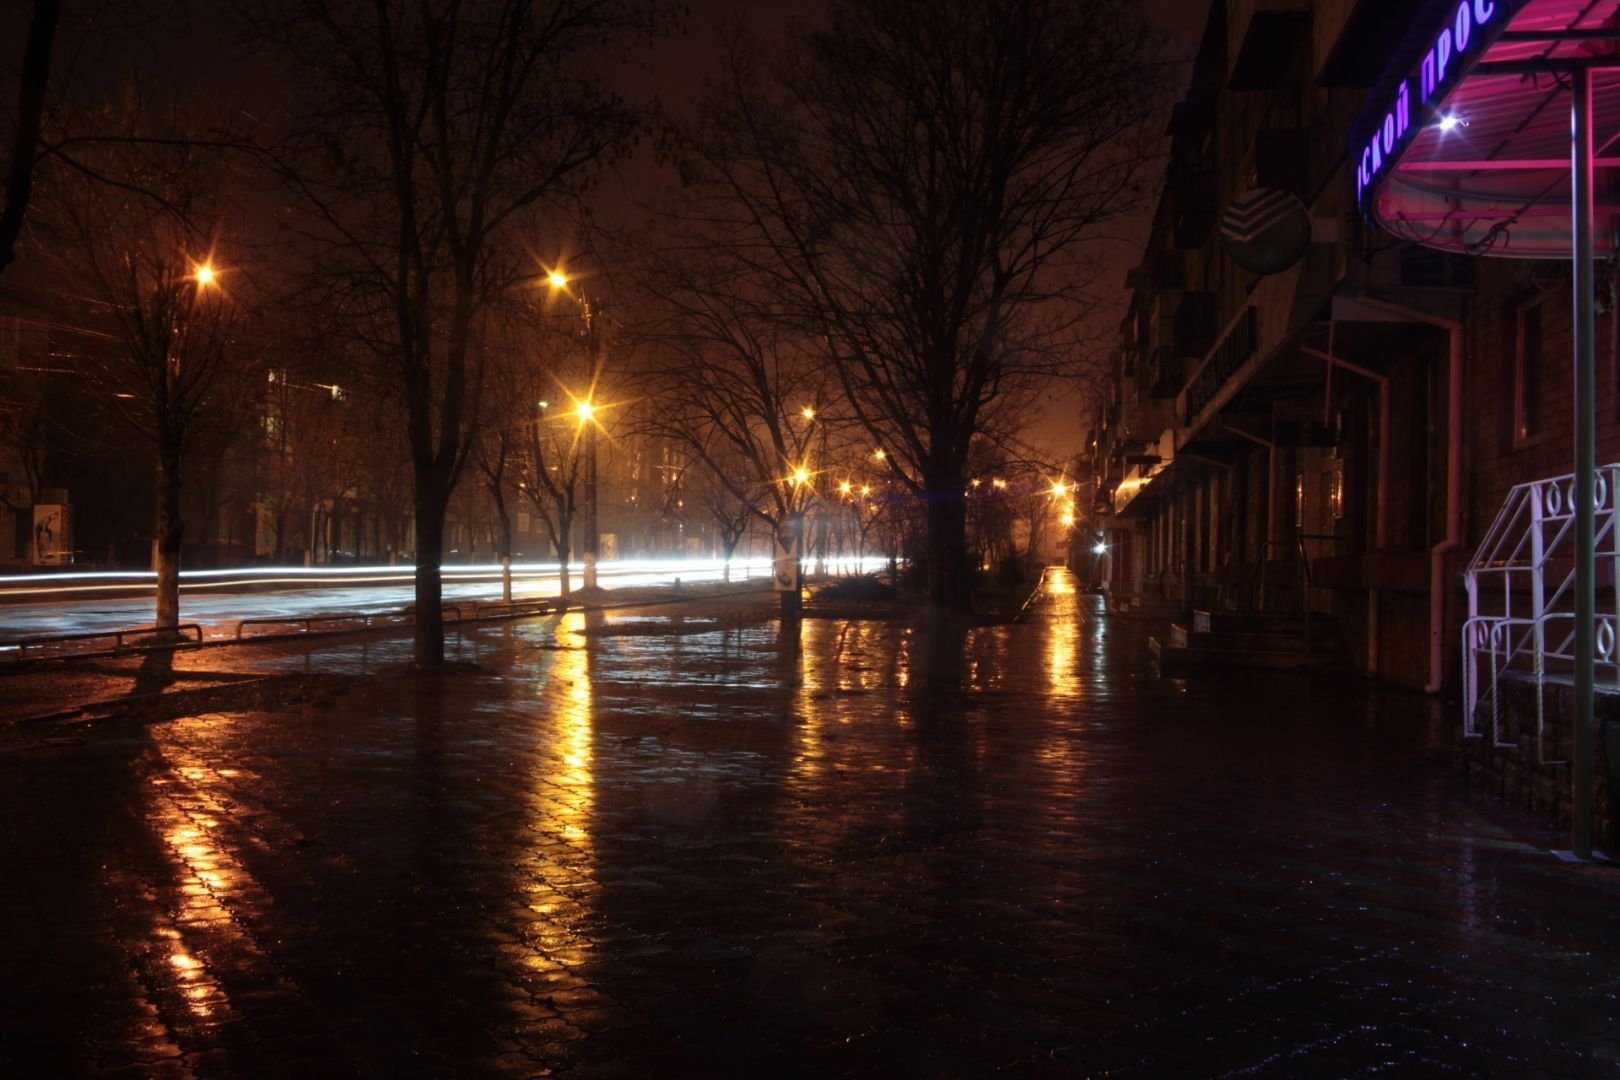 Тема поздней вечером. "Дождливый вечер". Ночной дождь. Дождь на улице. Поздний вечер в городе.